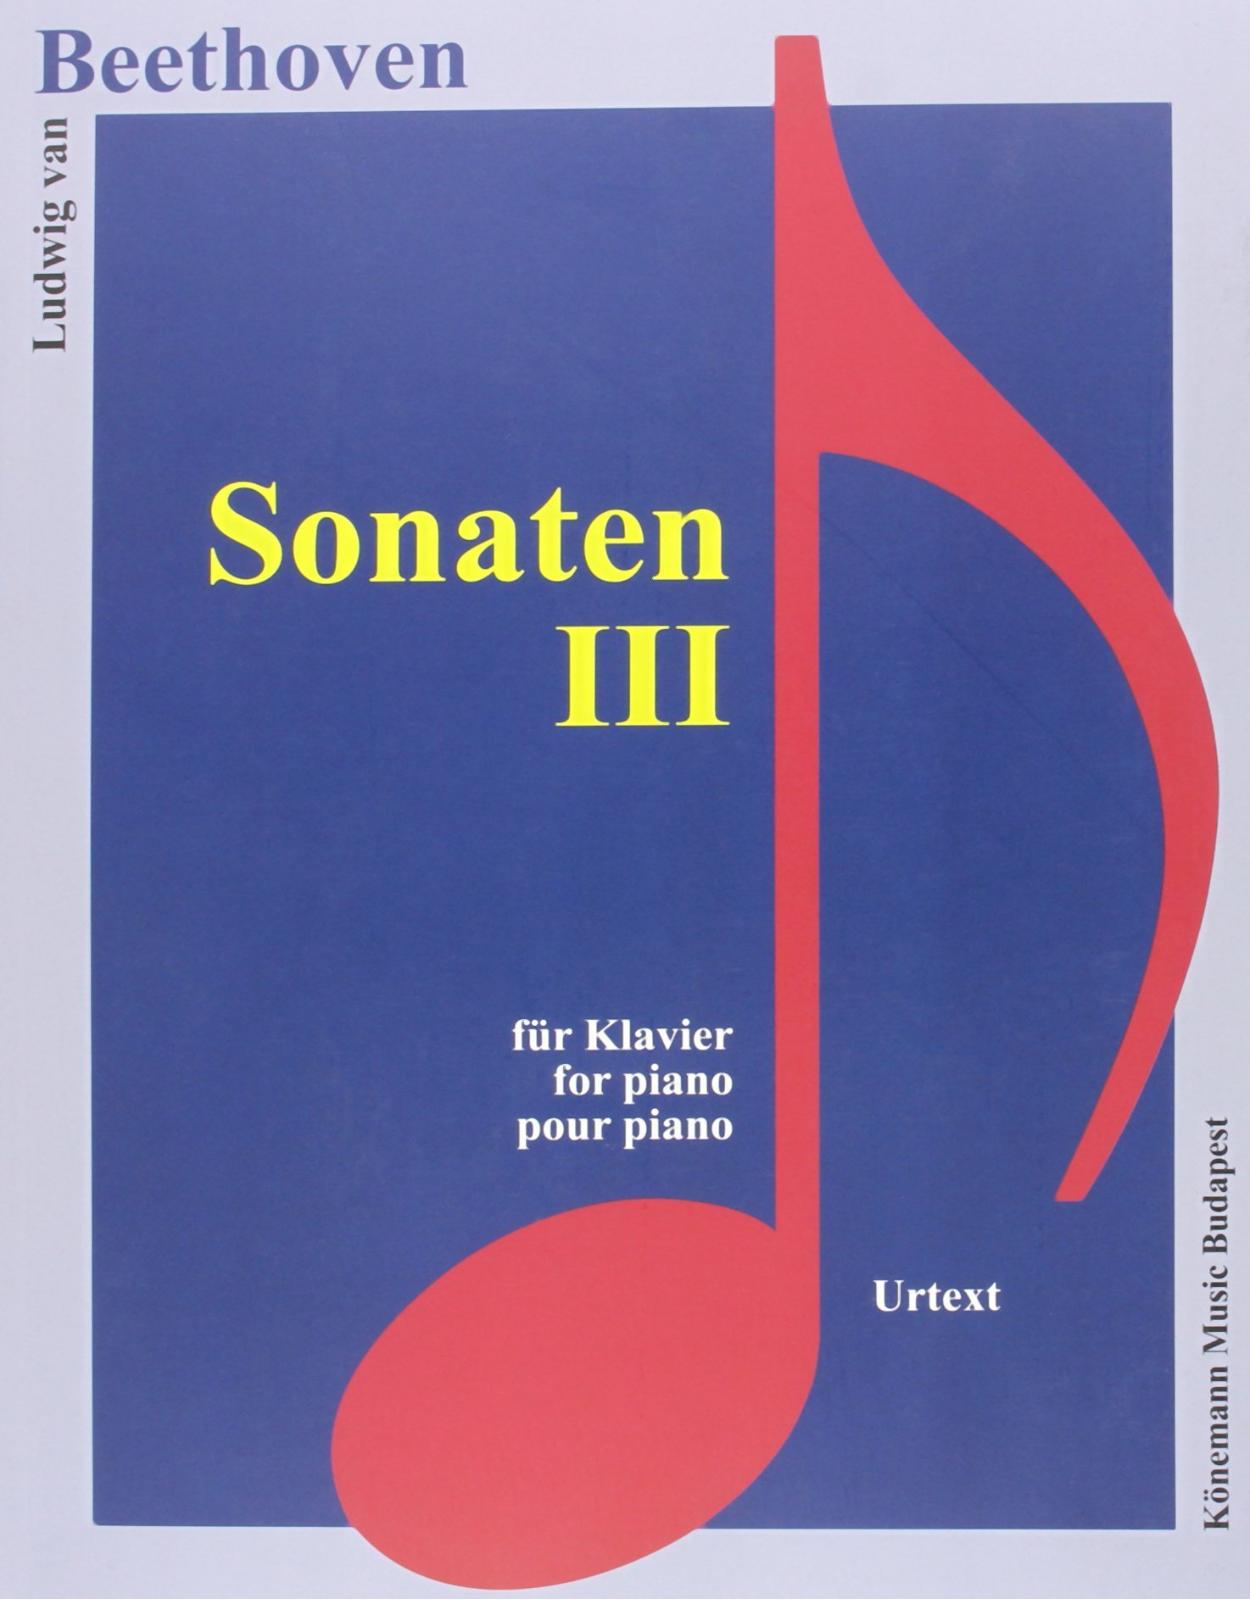 Beethoven, Sonaten III